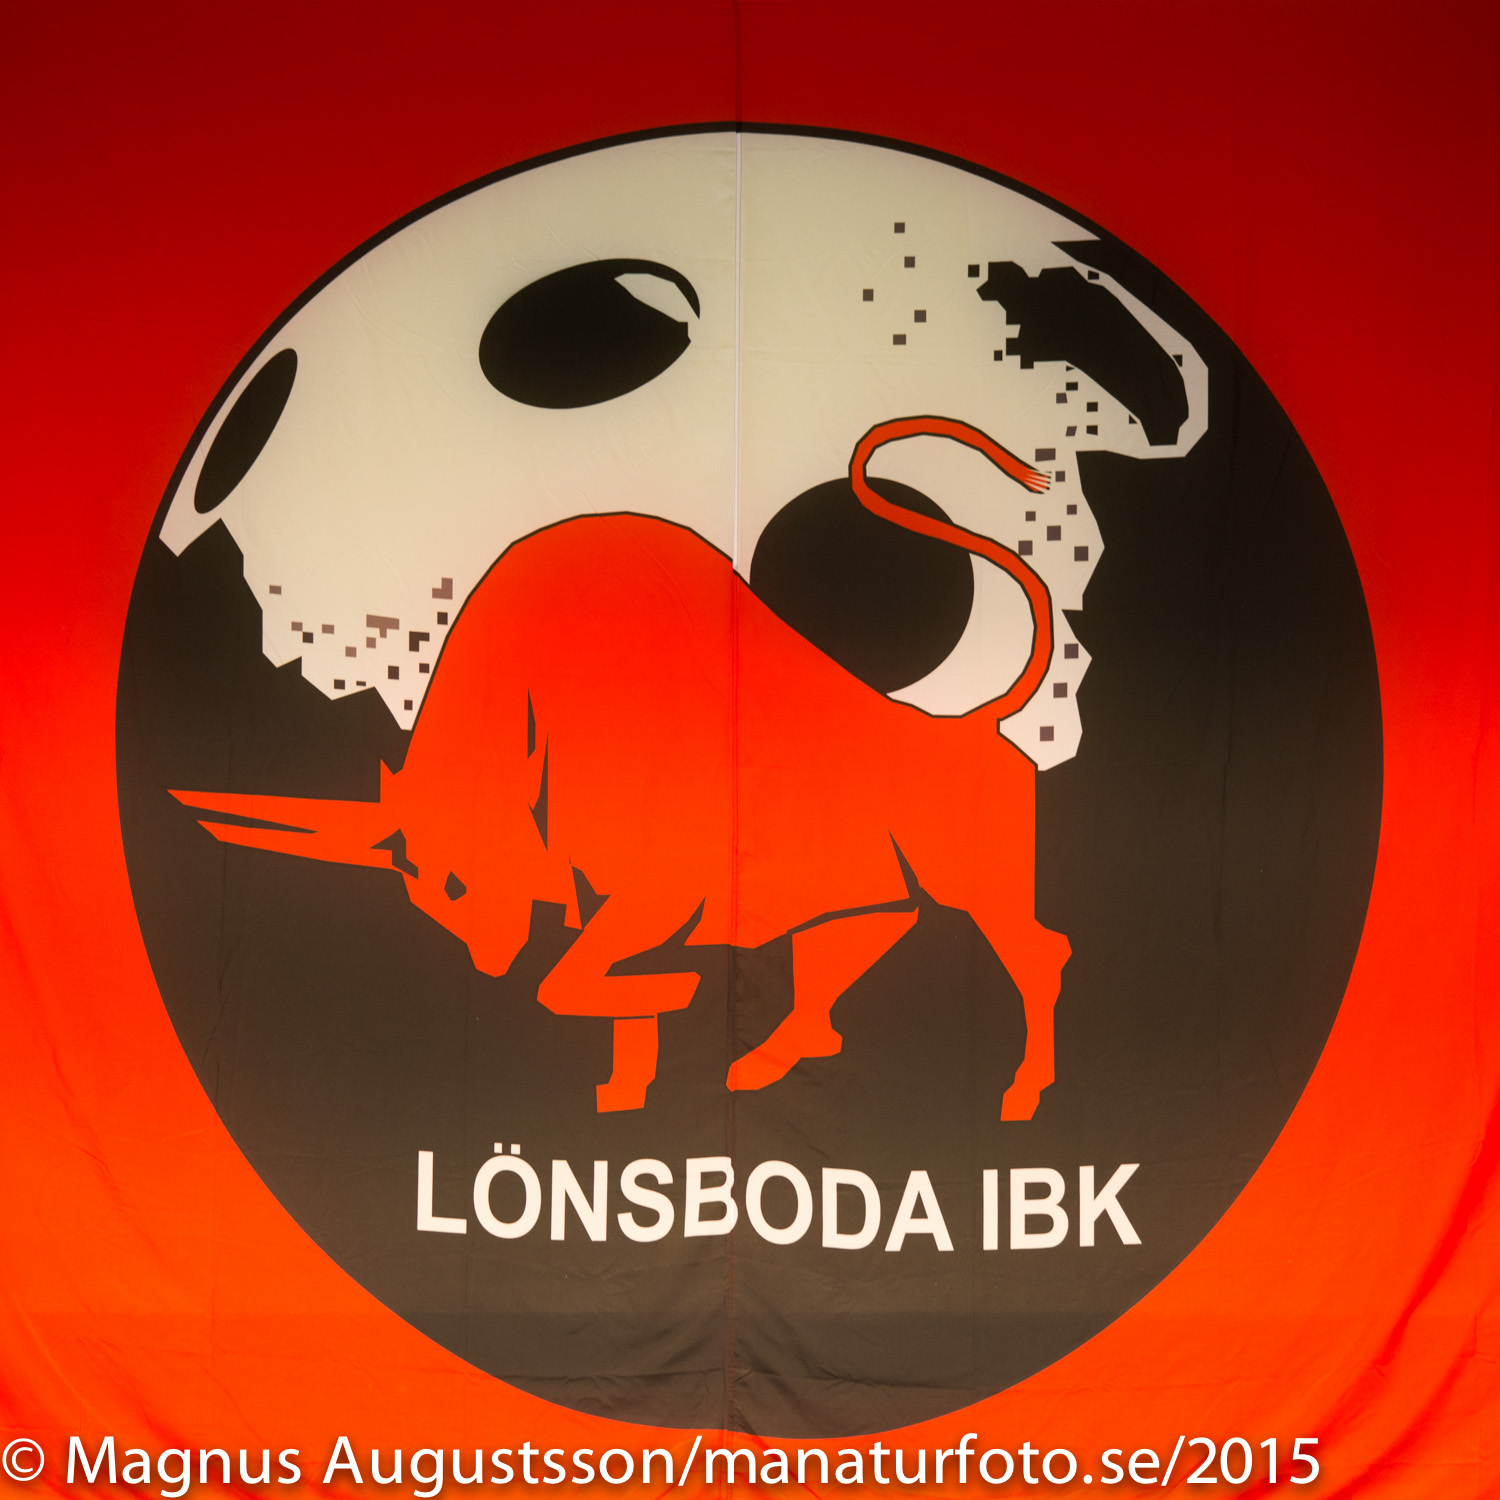 Till Lnsboda IBK:s hemsida